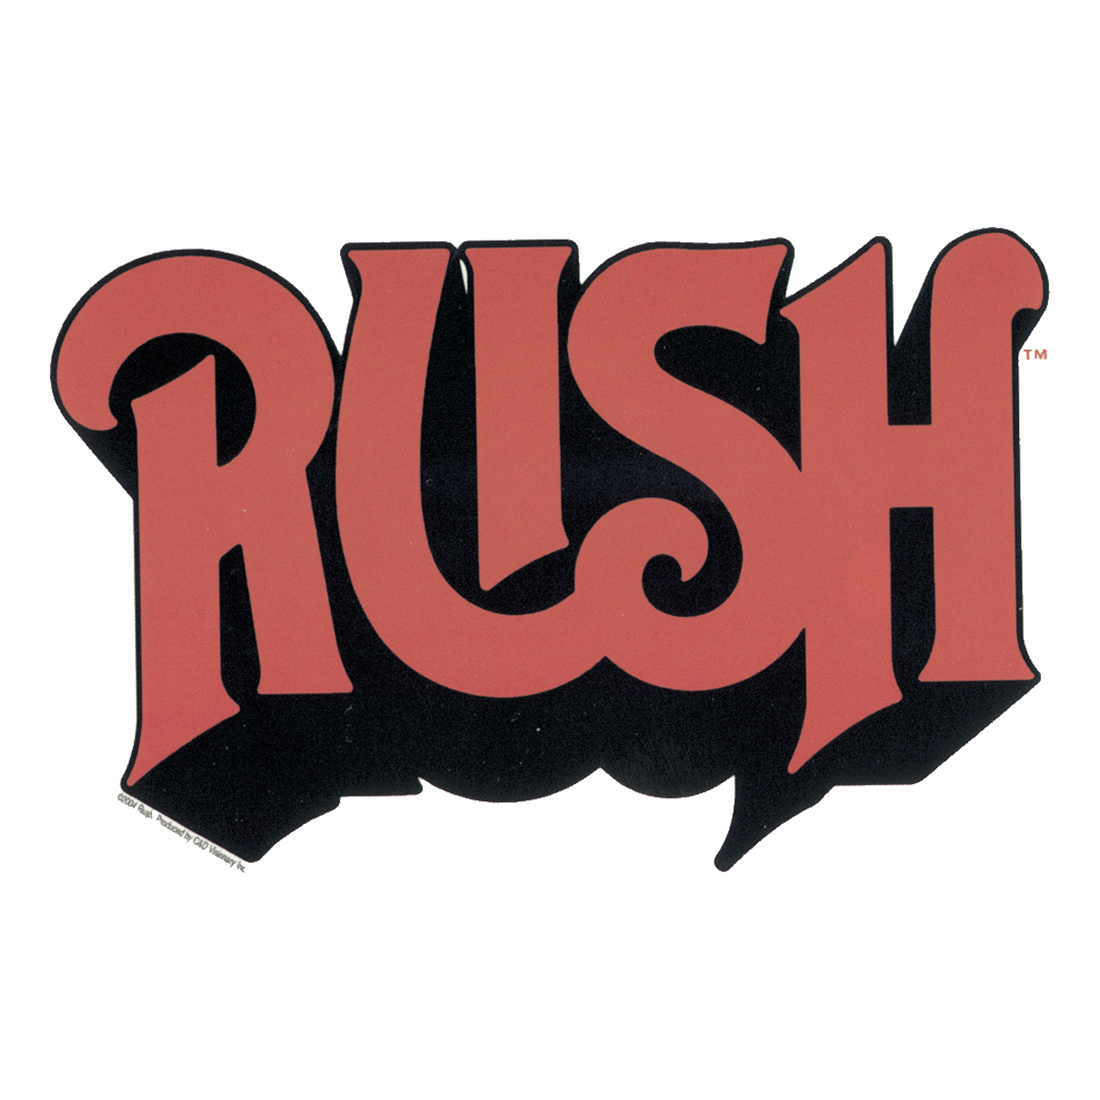 Hemispheres (Rush album) - Wikipedia